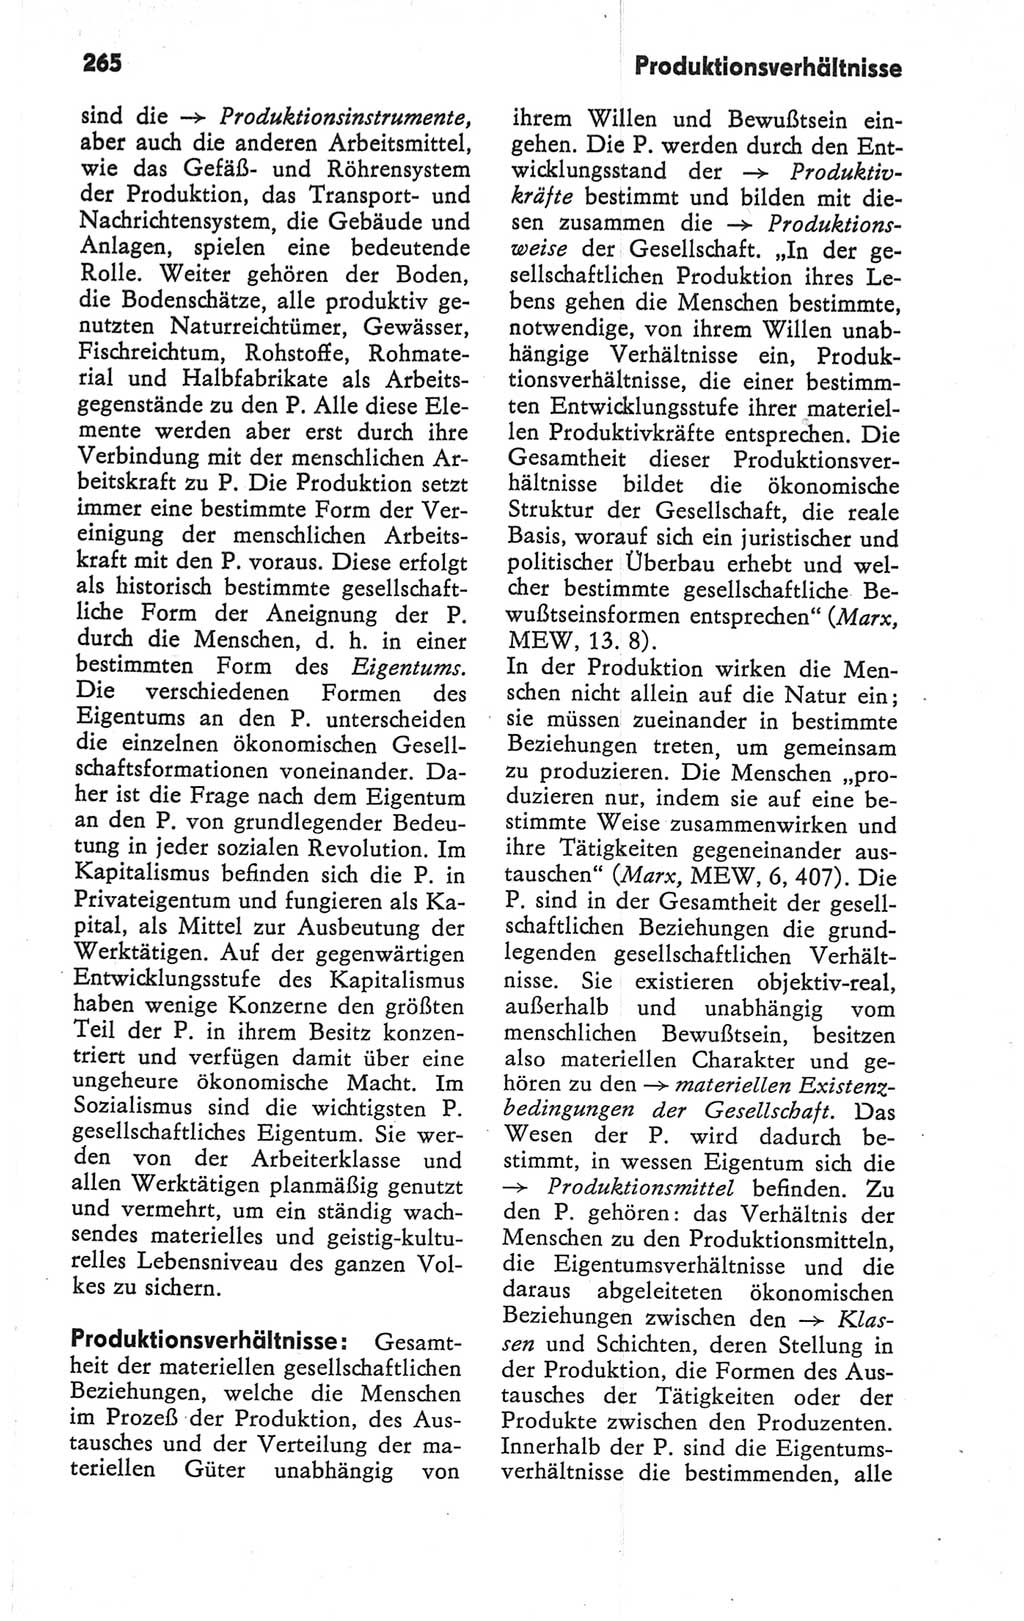 Kleines Wörterbuch der marxistisch-leninistischen Philosophie [Deutsche Demokratische Republik (DDR)] 1979, Seite 265 (Kl. Wb. ML Phil. DDR 1979, S. 265)